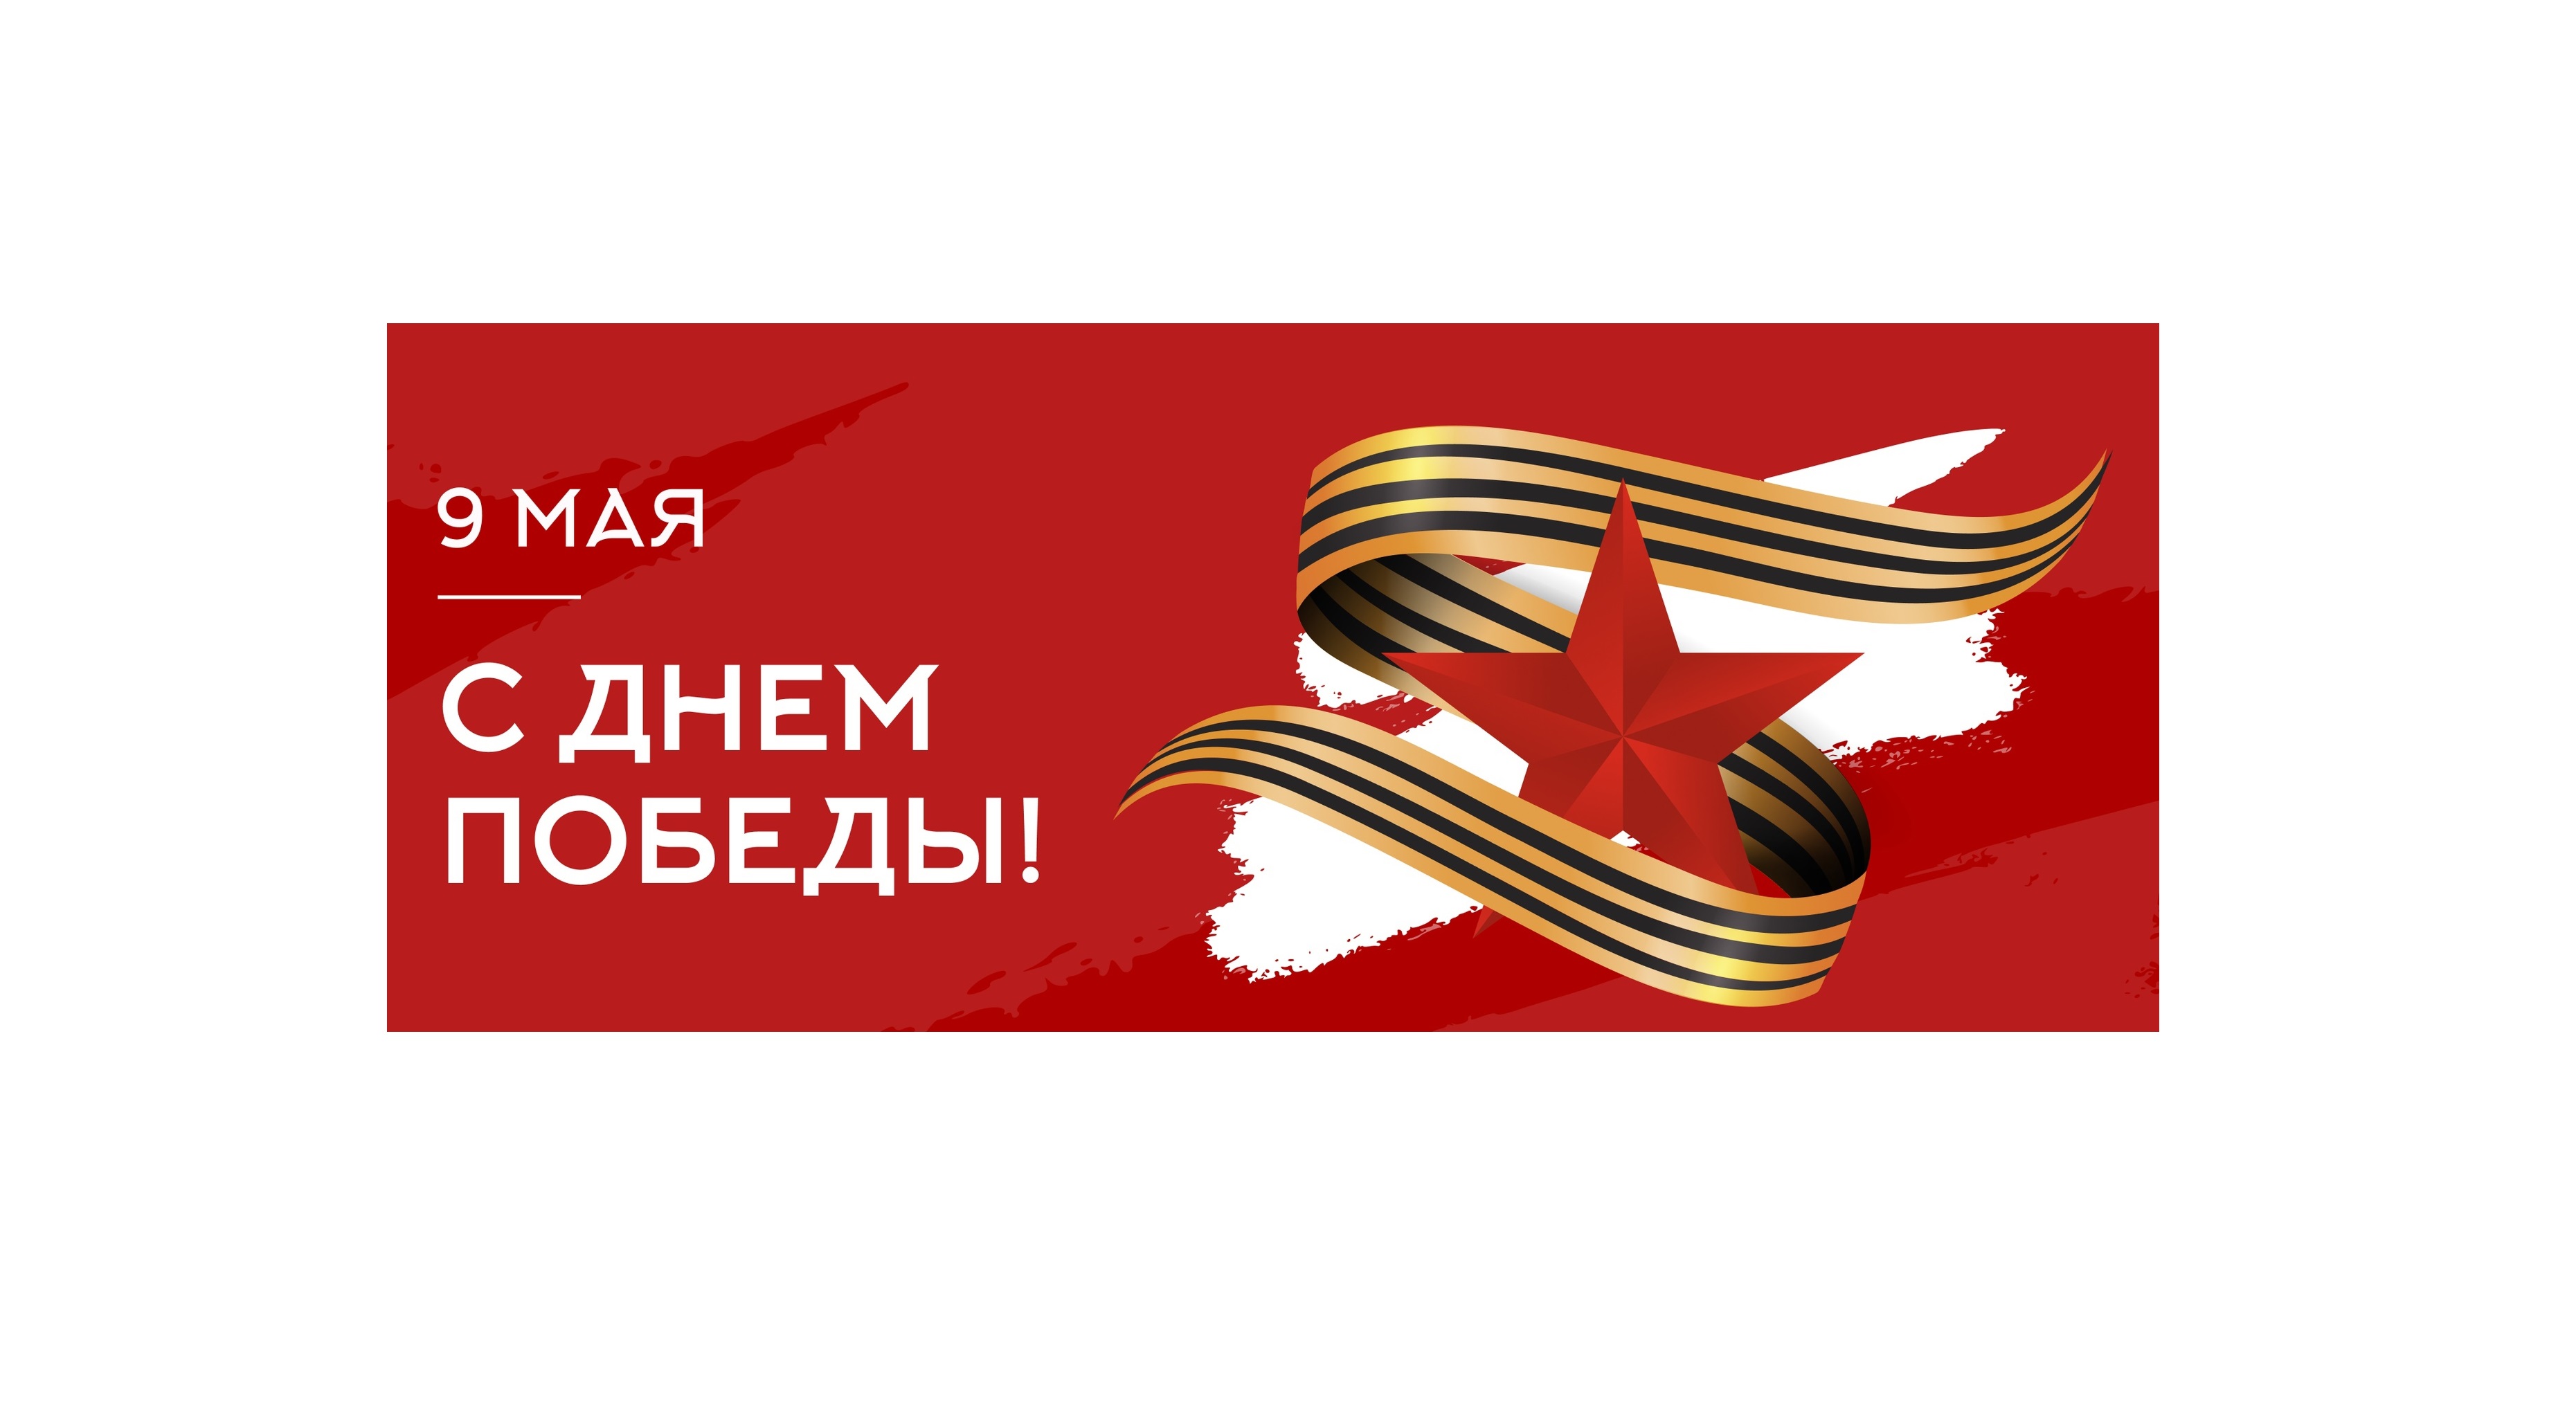 Приглашаем вас 9 мая на мероприятия, посвященные 79-й годовщине Победы в Великой Отечественной войне.